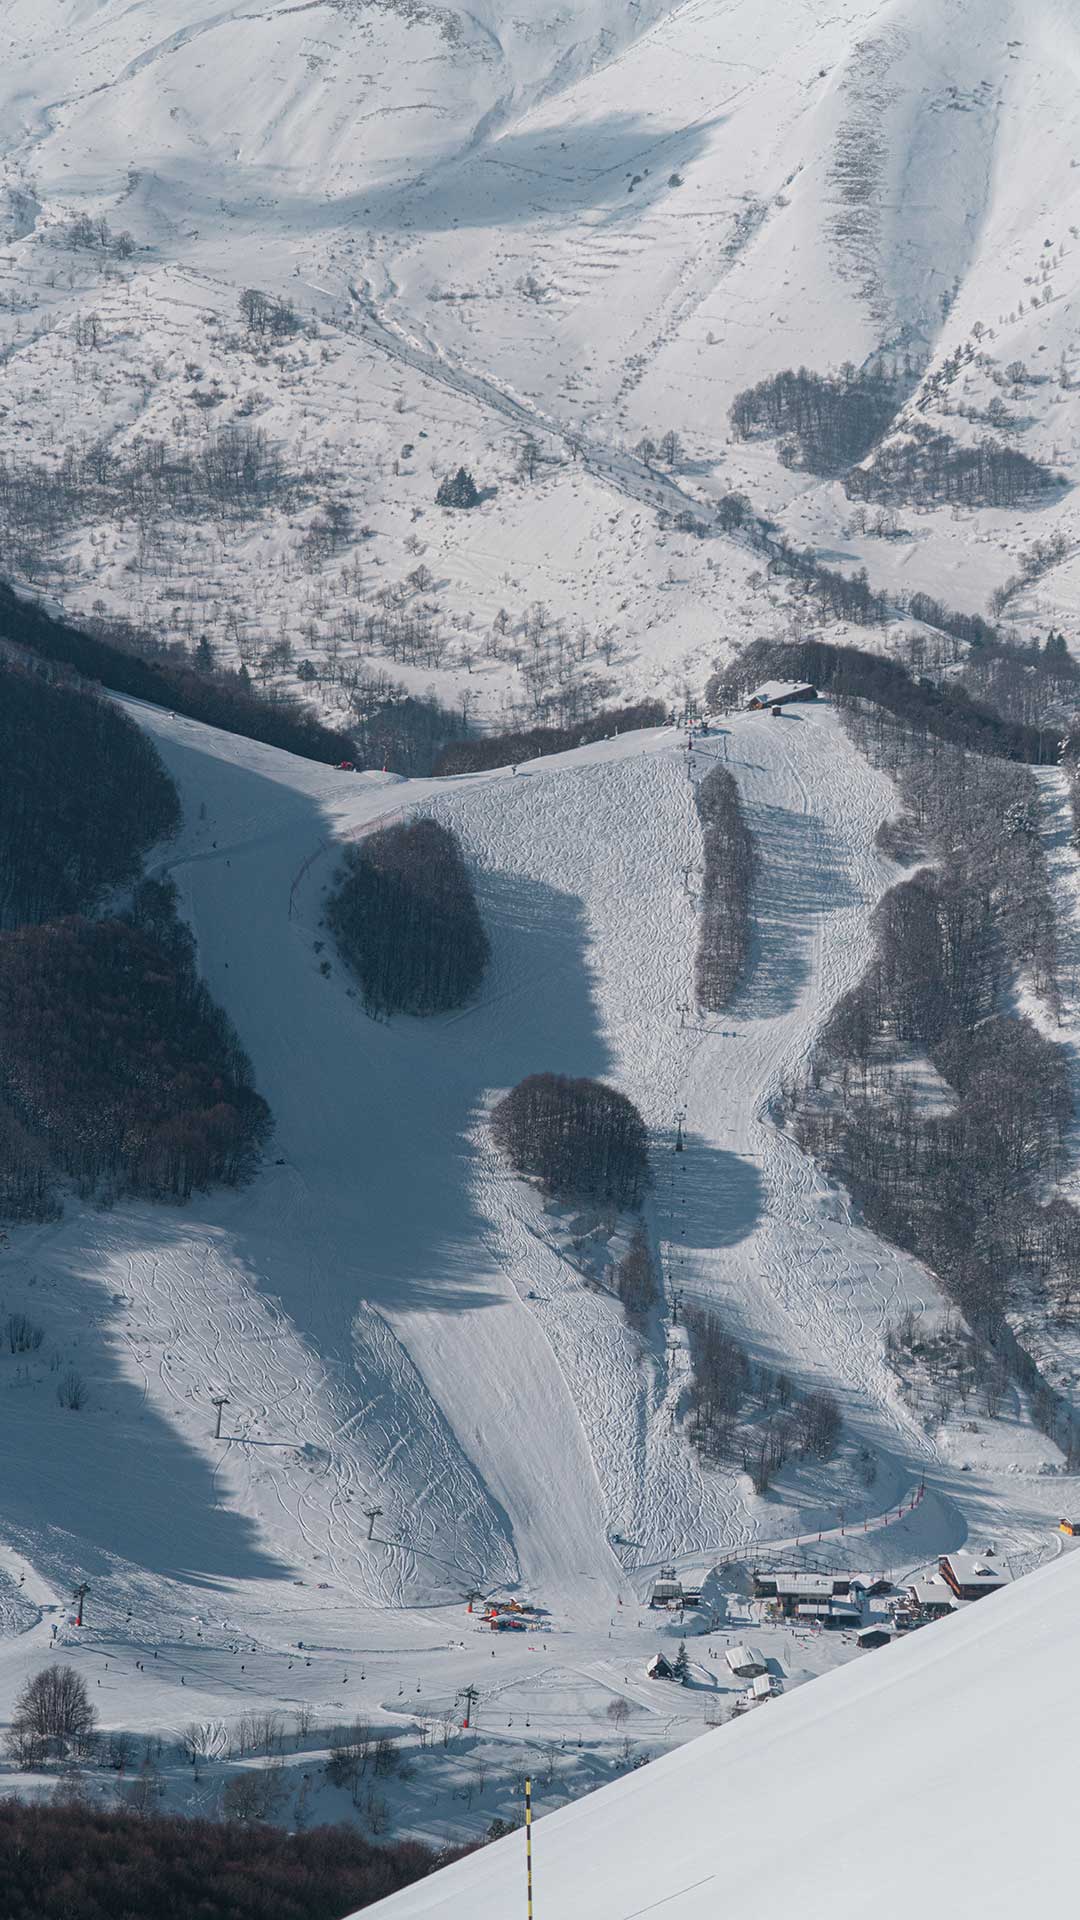 Sciare in Riserva Bianca: condizioni perfette per un'esperienza indimenticabile